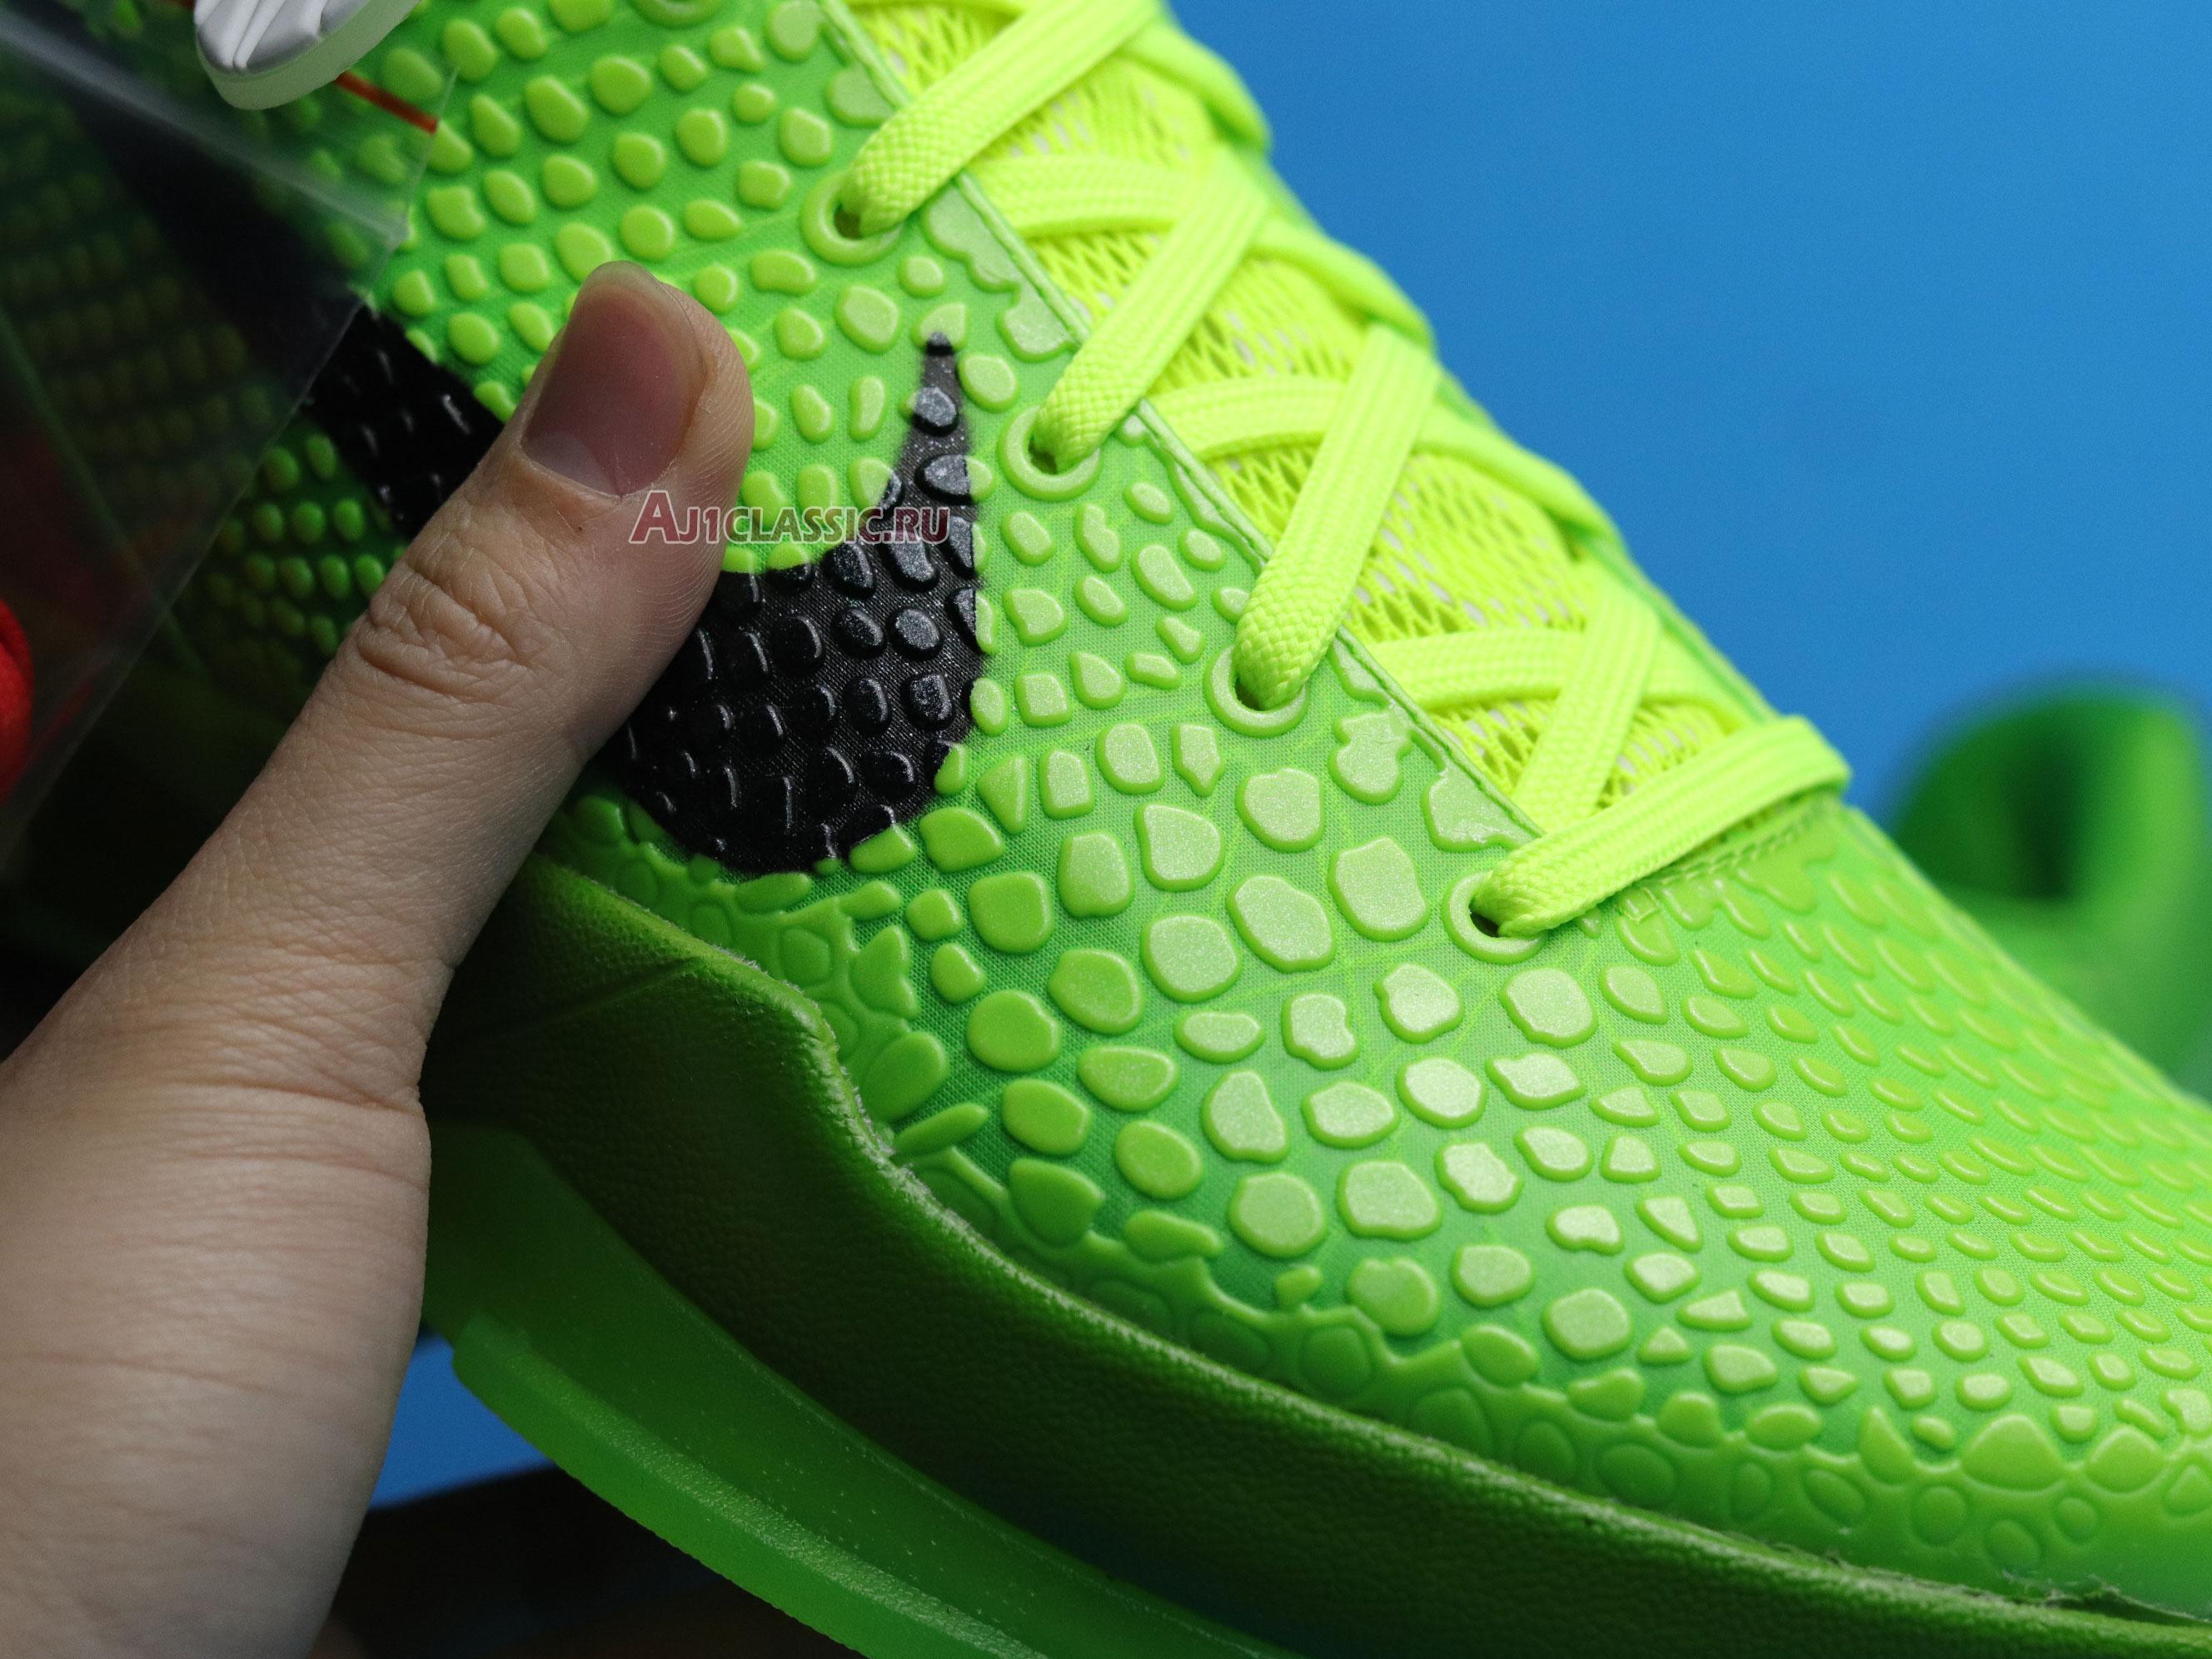 Nike Zoom Kobe 6 Protro "Grinch" CW2190-300